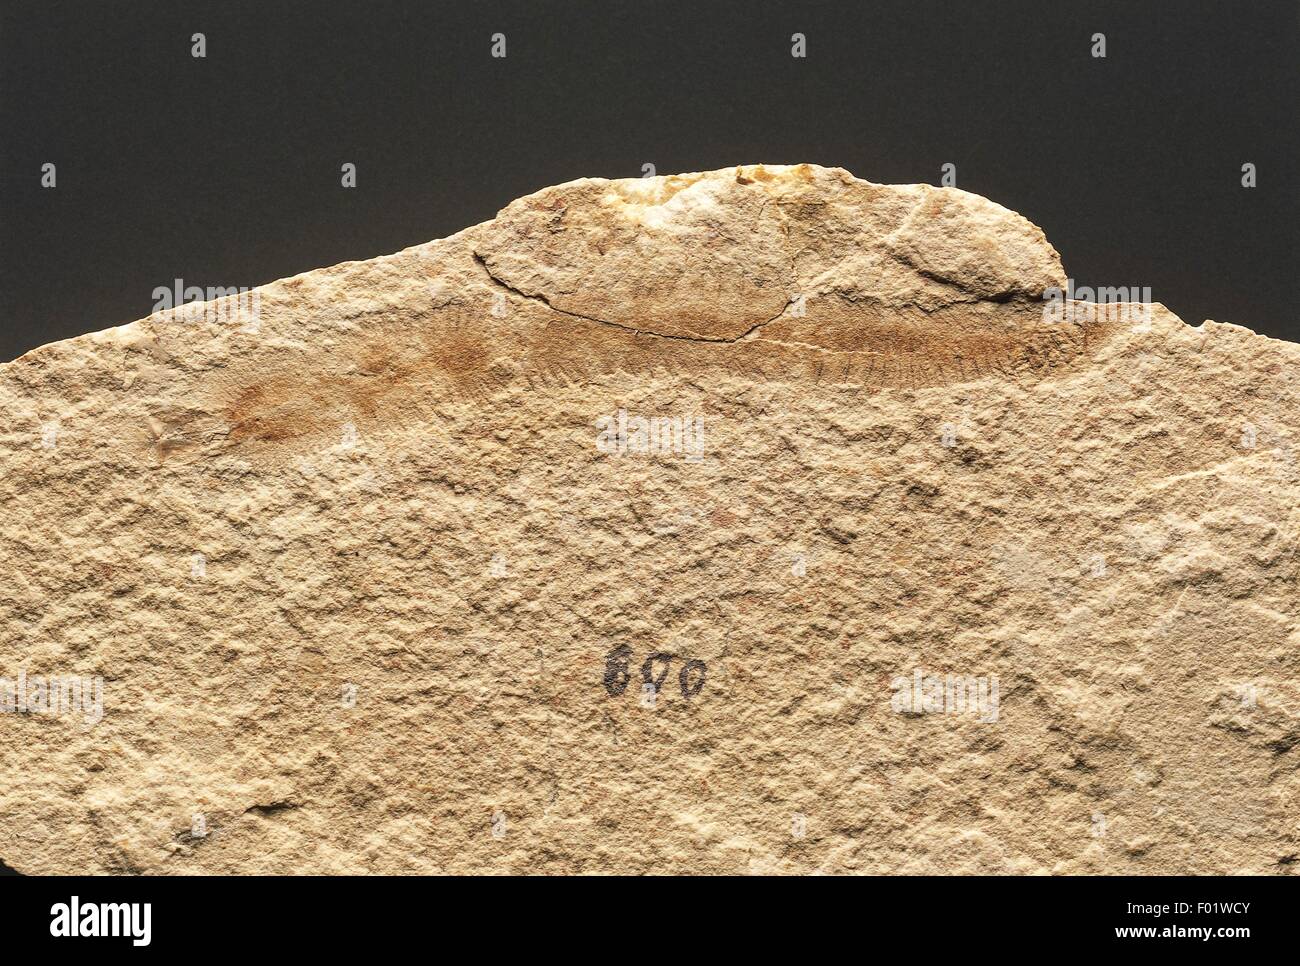 Fossils - Protostomia - Annelids - Polychaeta - Eunicites - Cretaceous - Lebanon. Stock Photo